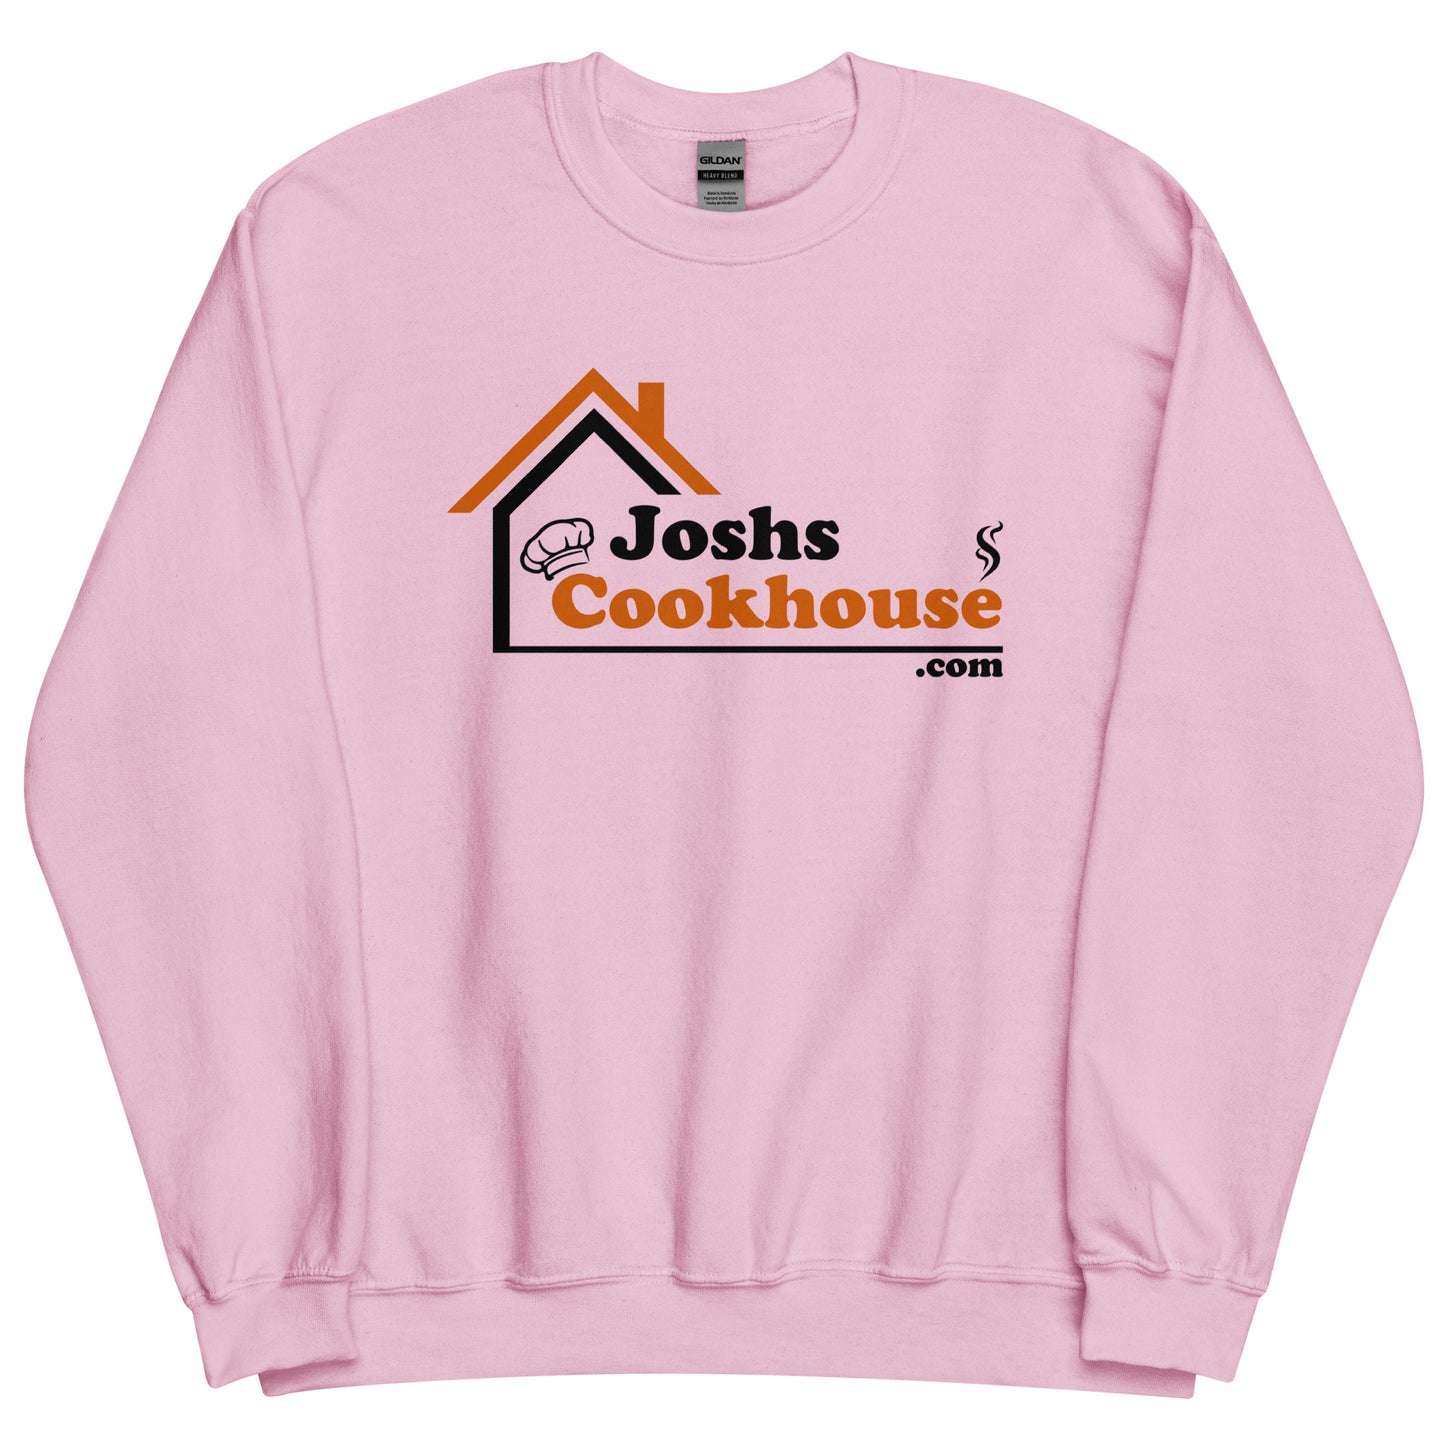 Joshs Cookhouse Crew Neck